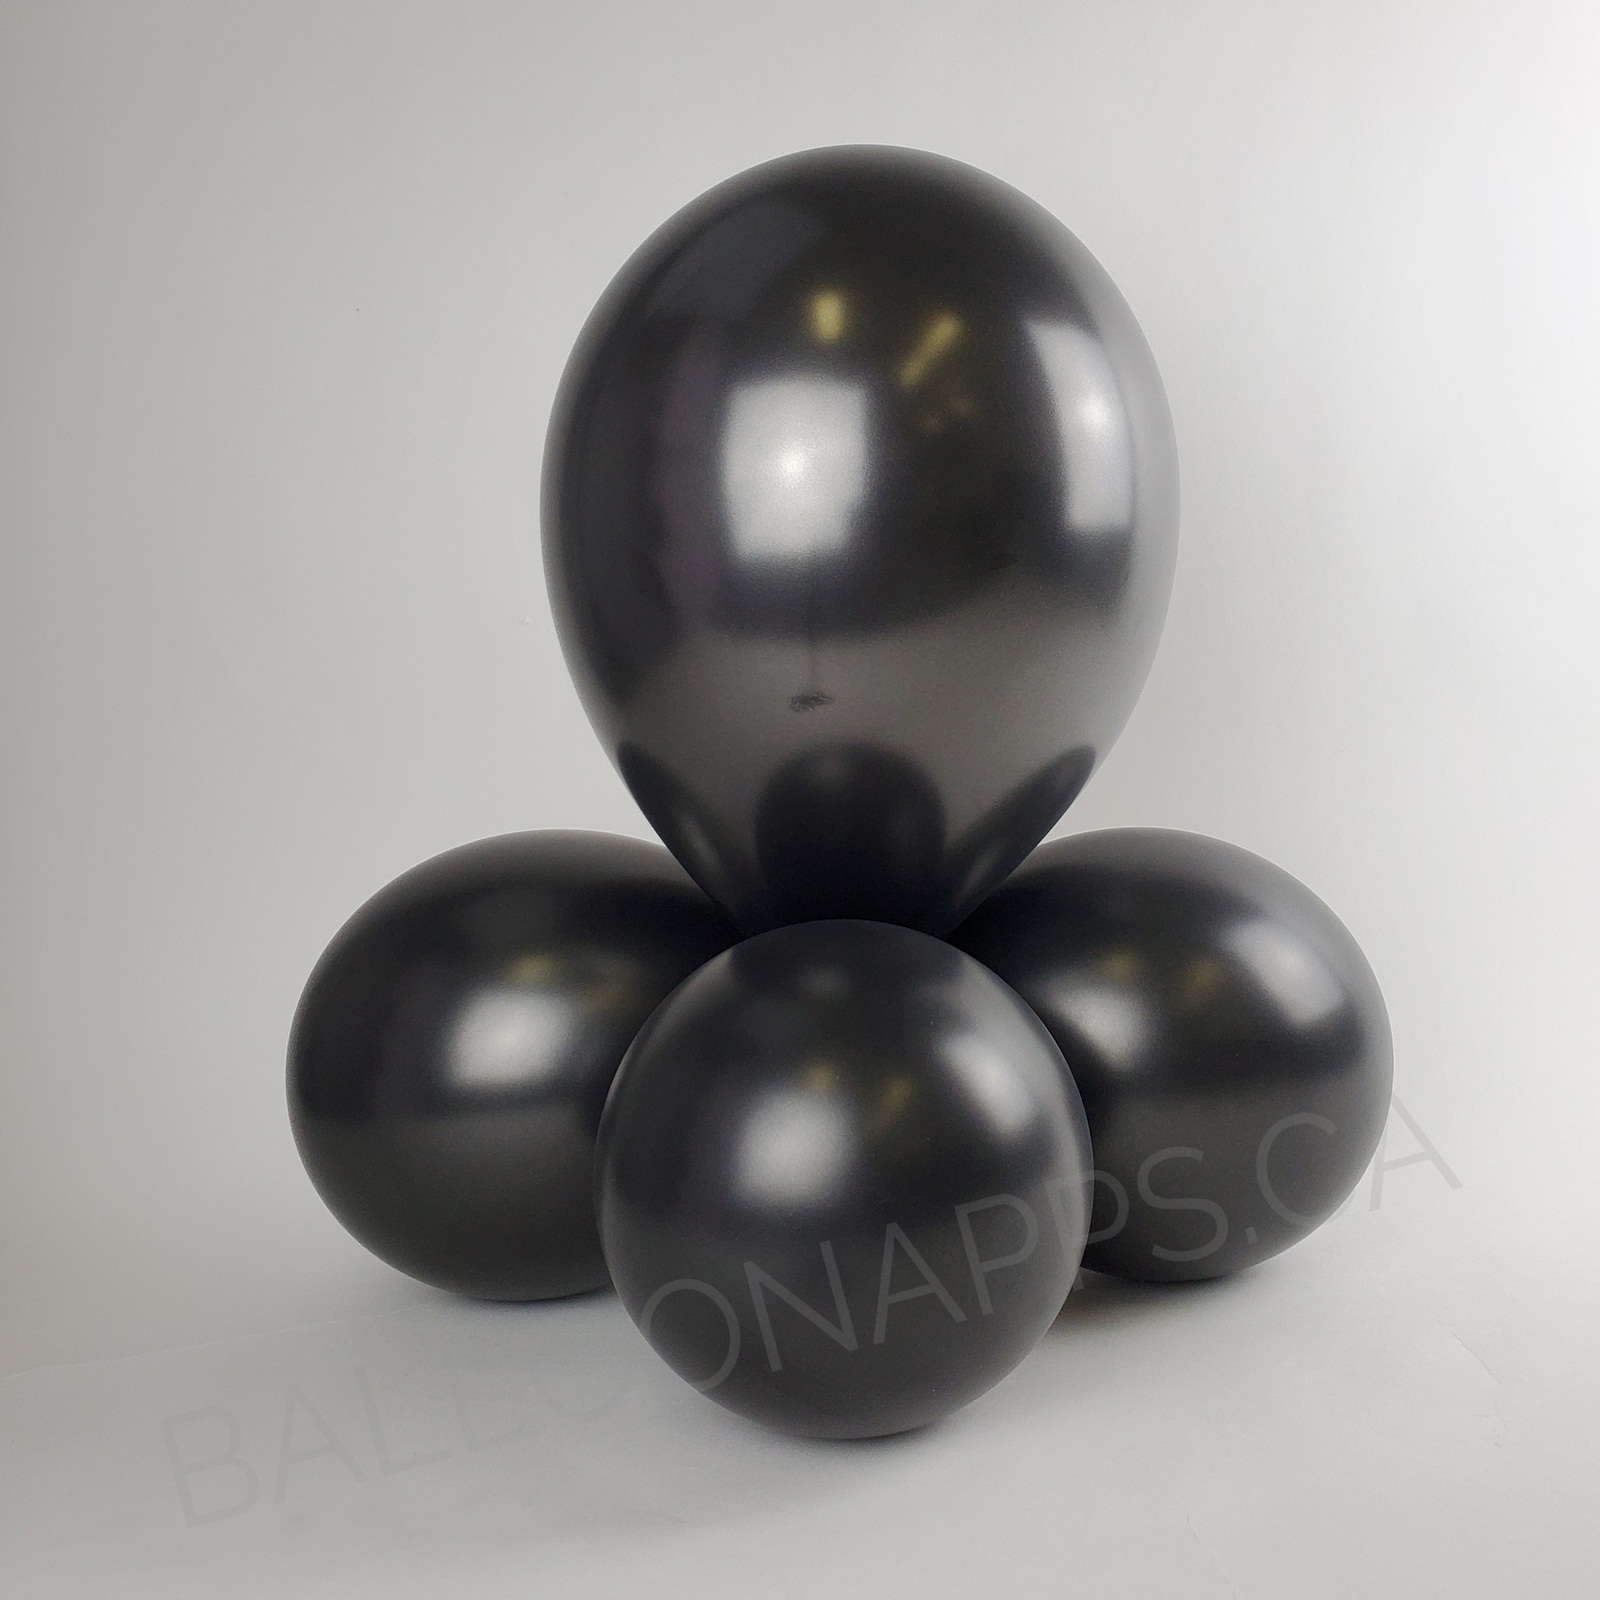 balloon texture Q (100) 11